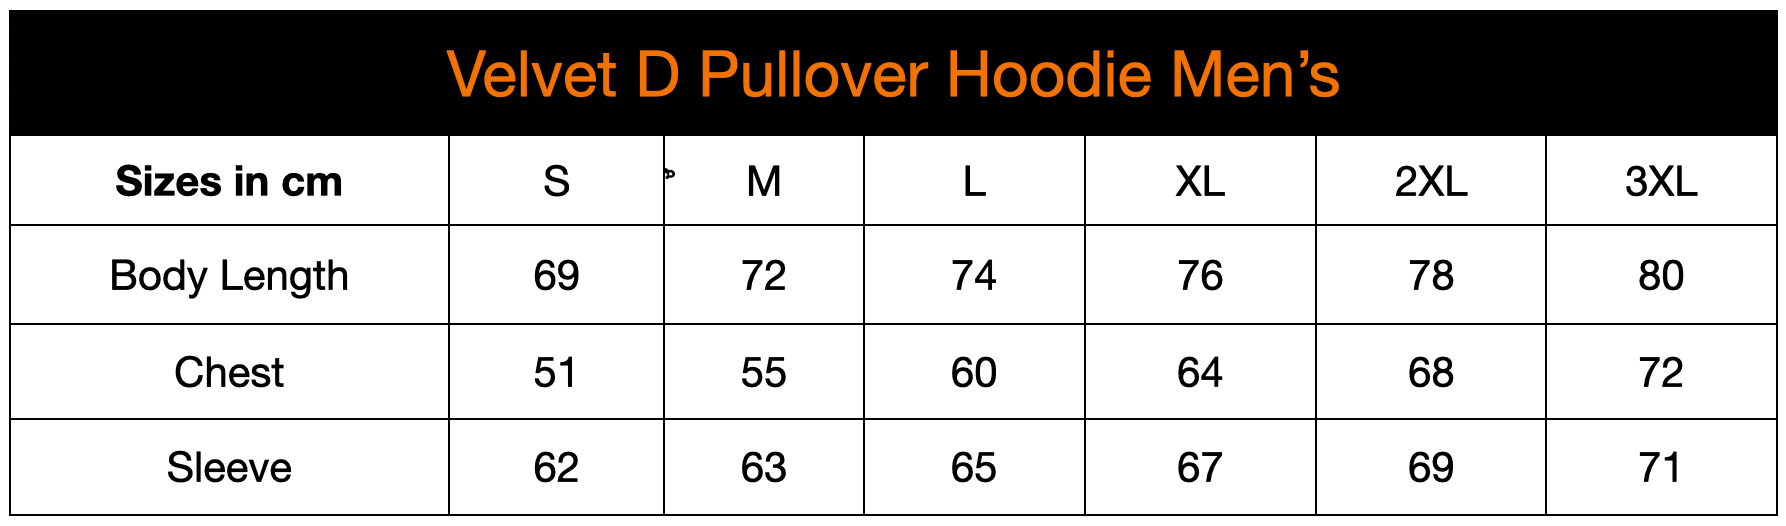 Velvet D Pullover Hoodie - Men's